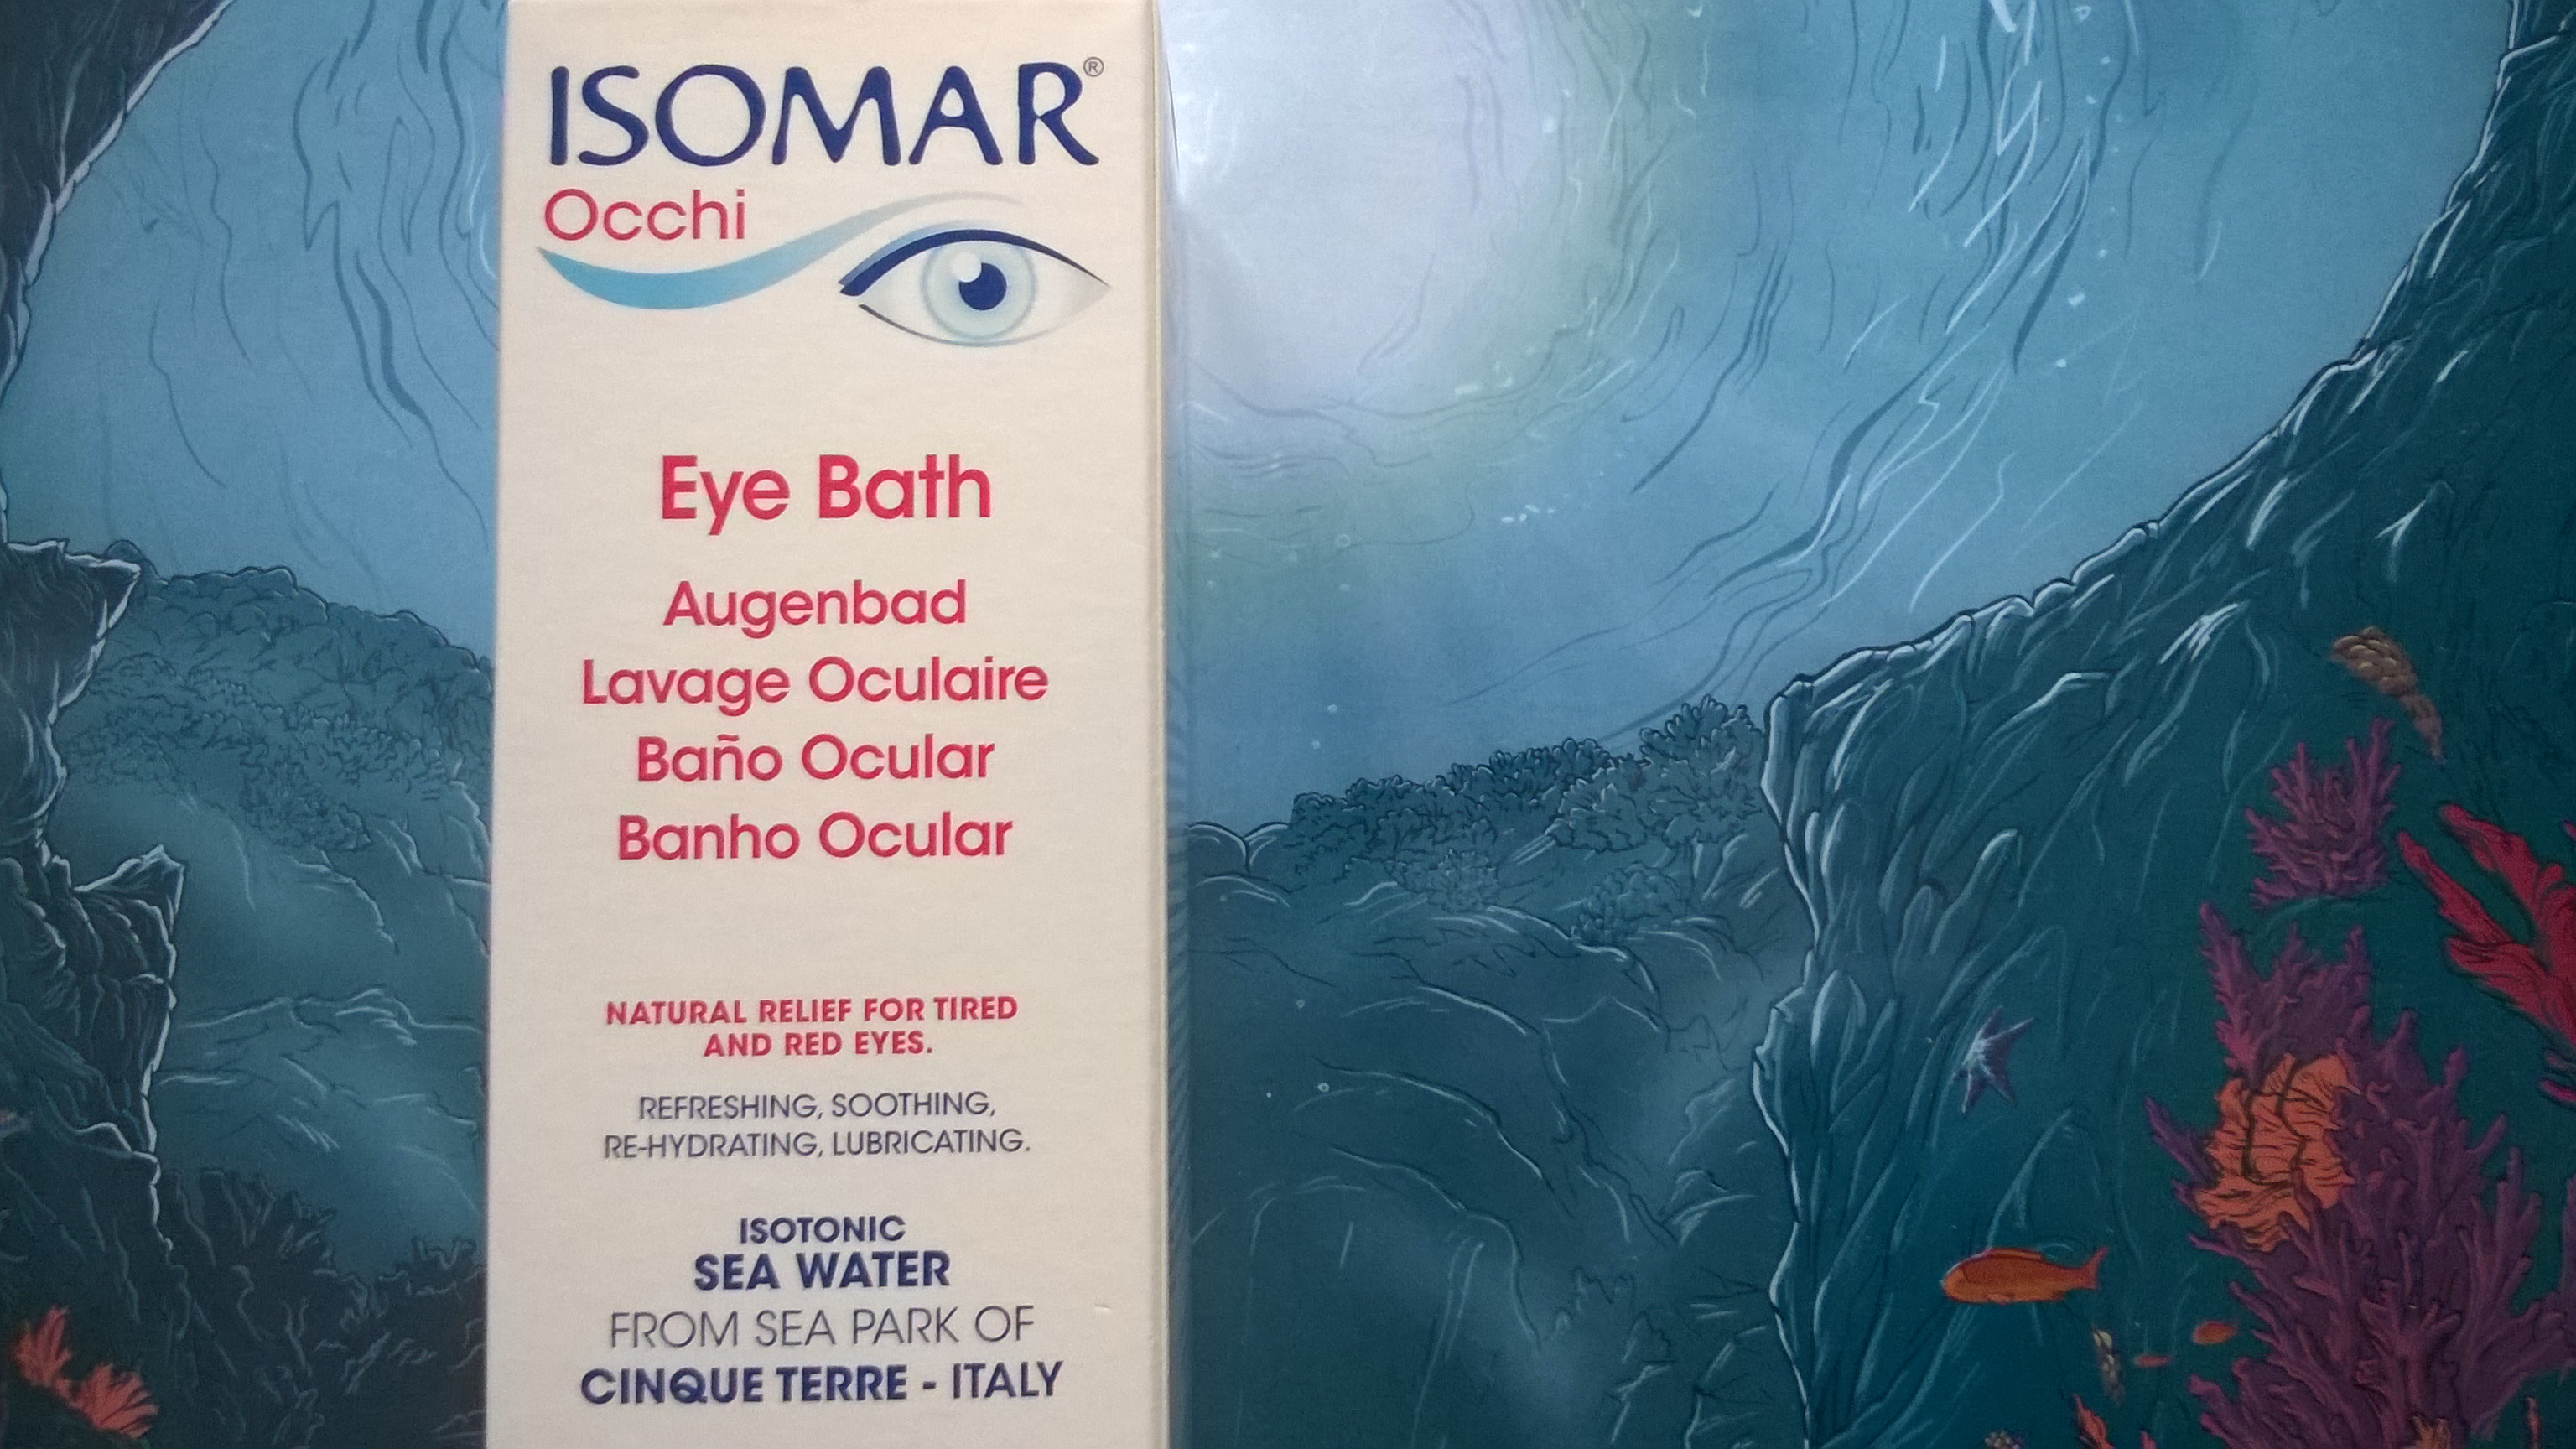 Jak dbać o oczy ISOMAR OCCHI